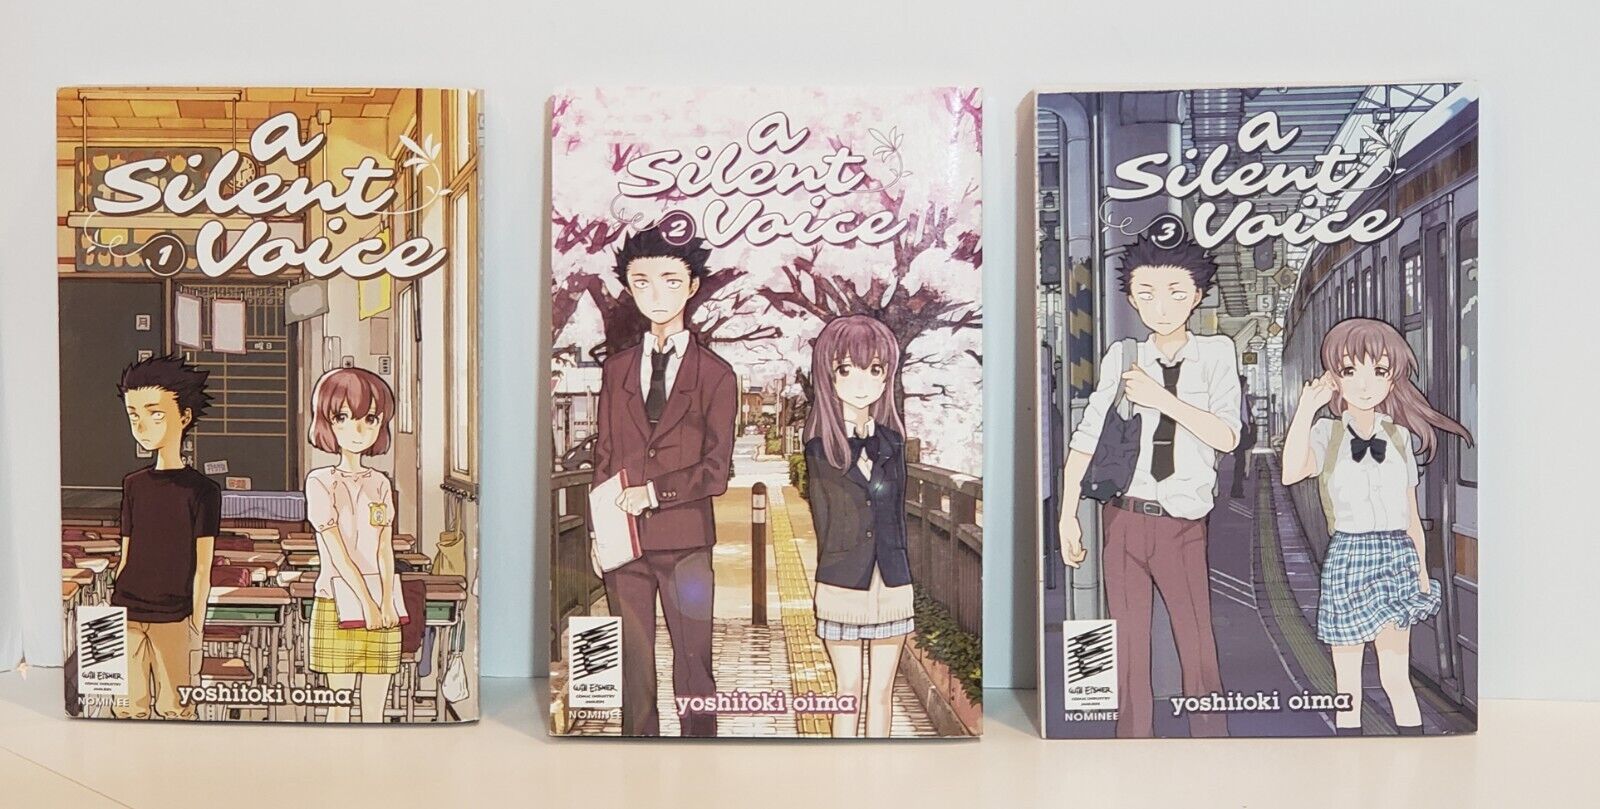 A Silent Voice by Yoshitoki Oima  Volumes 1,2,3 English Manga TPB